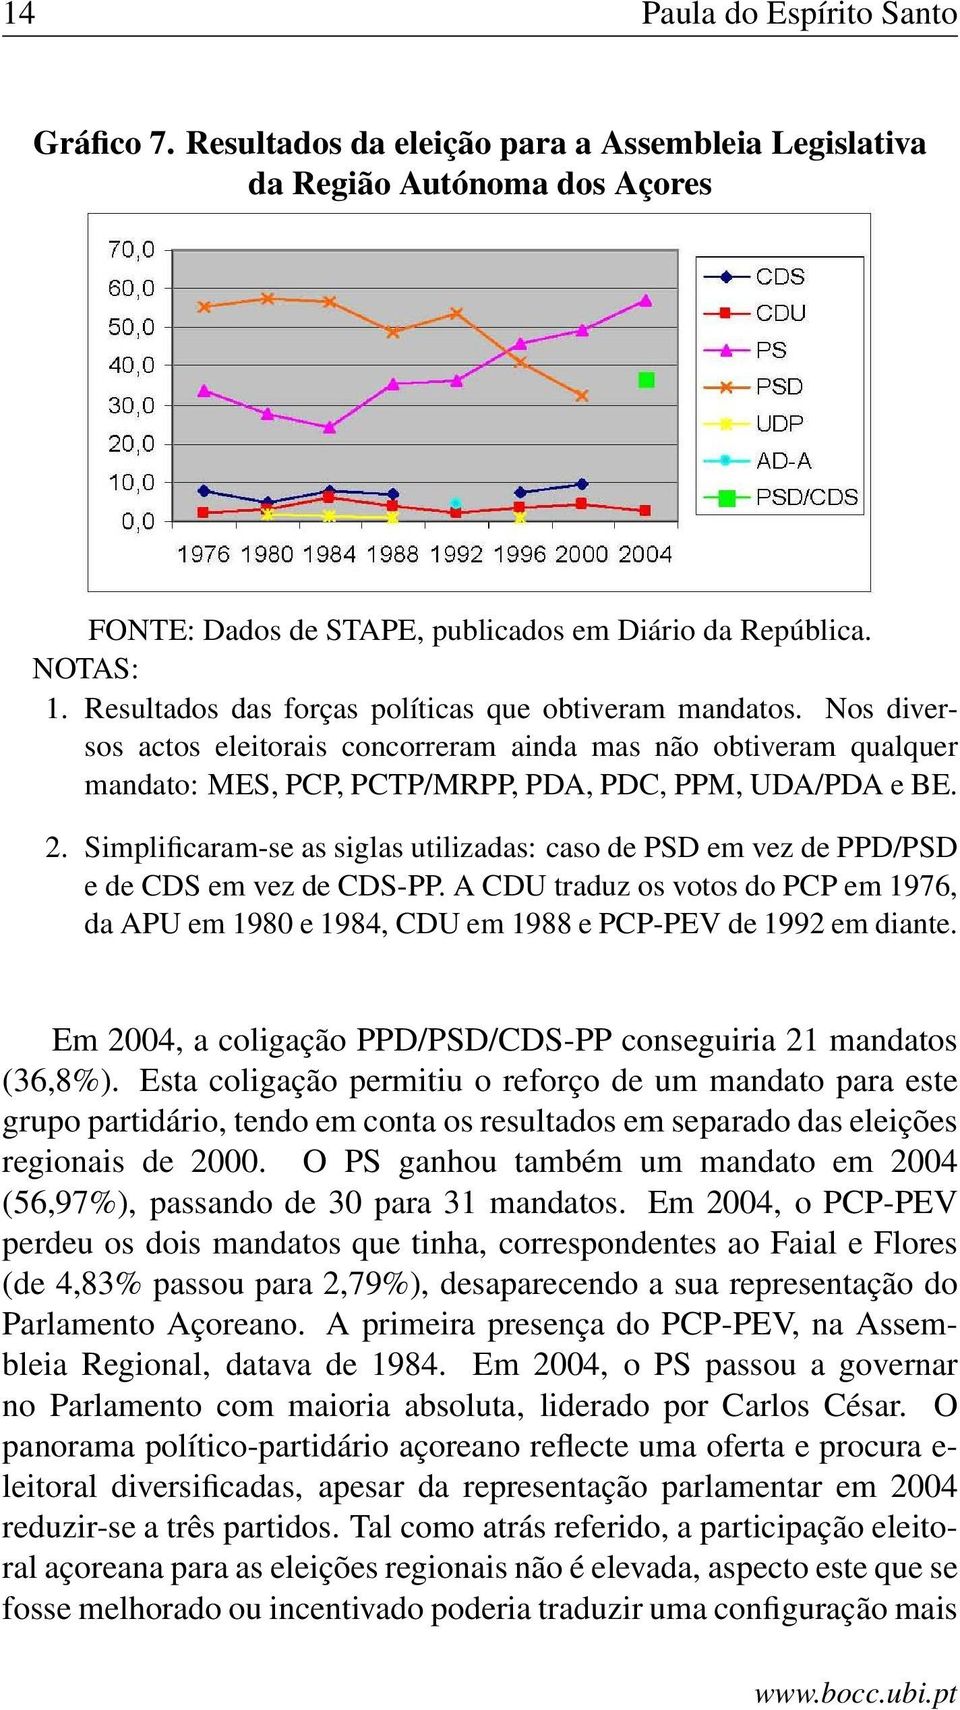 Simplificaram-se as siglas utilizadas: caso de PSD em vez de PPD/PSD e de CDS em vez de CDS-PP. A CDU traduz os votos do PCP em 1976, da APU em 1980 e 1984, CDU em 1988 e PCP-PEV de 1992 em diante.